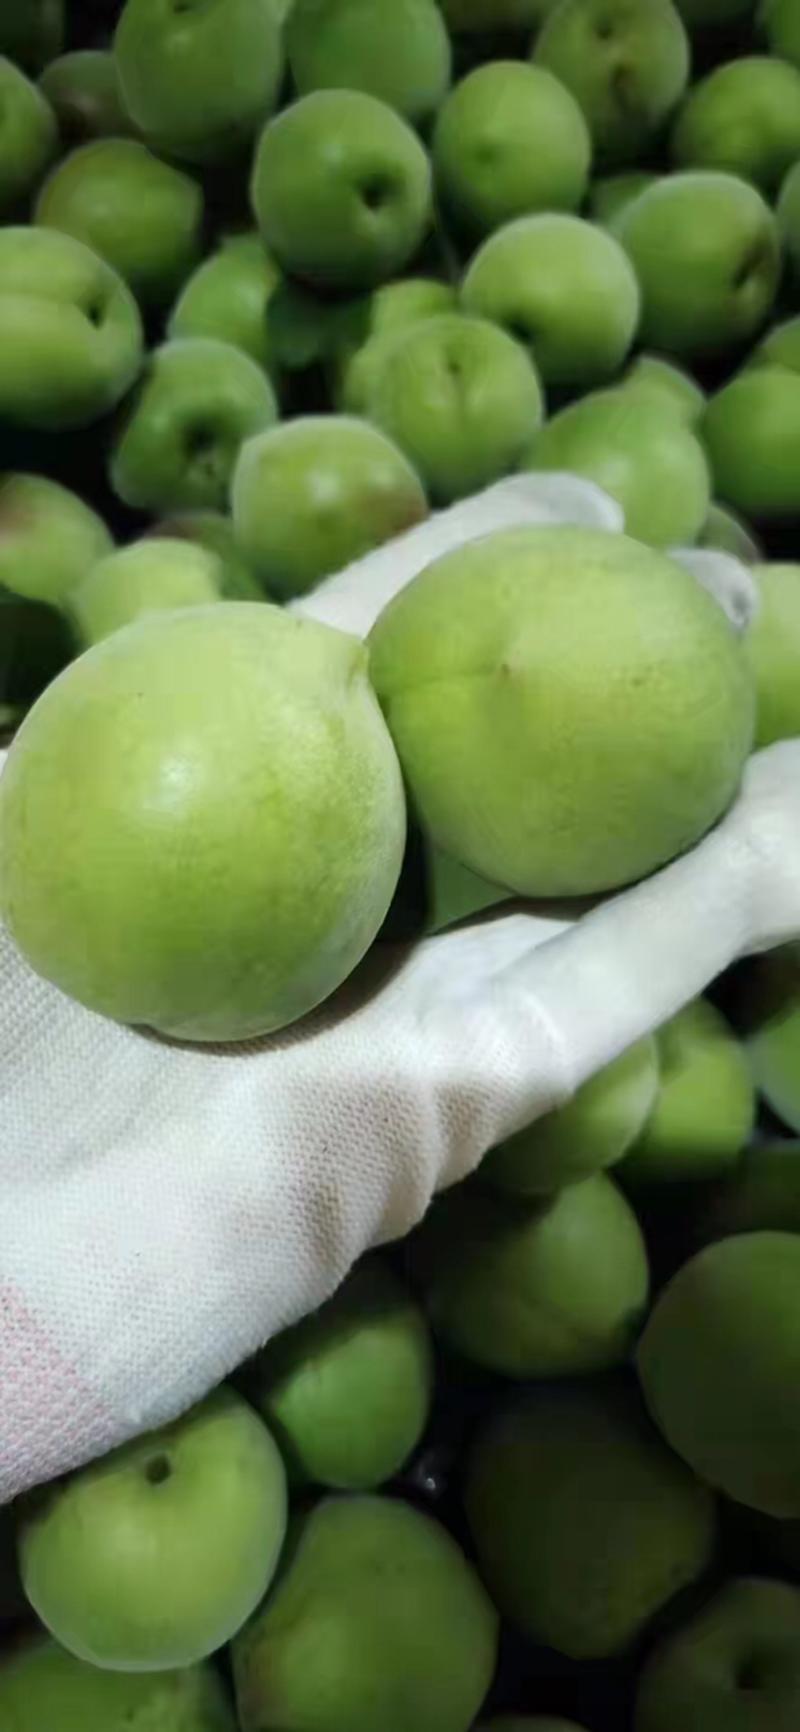 全国热销水果之一Z大青梅产地对接批发全国各地与零售